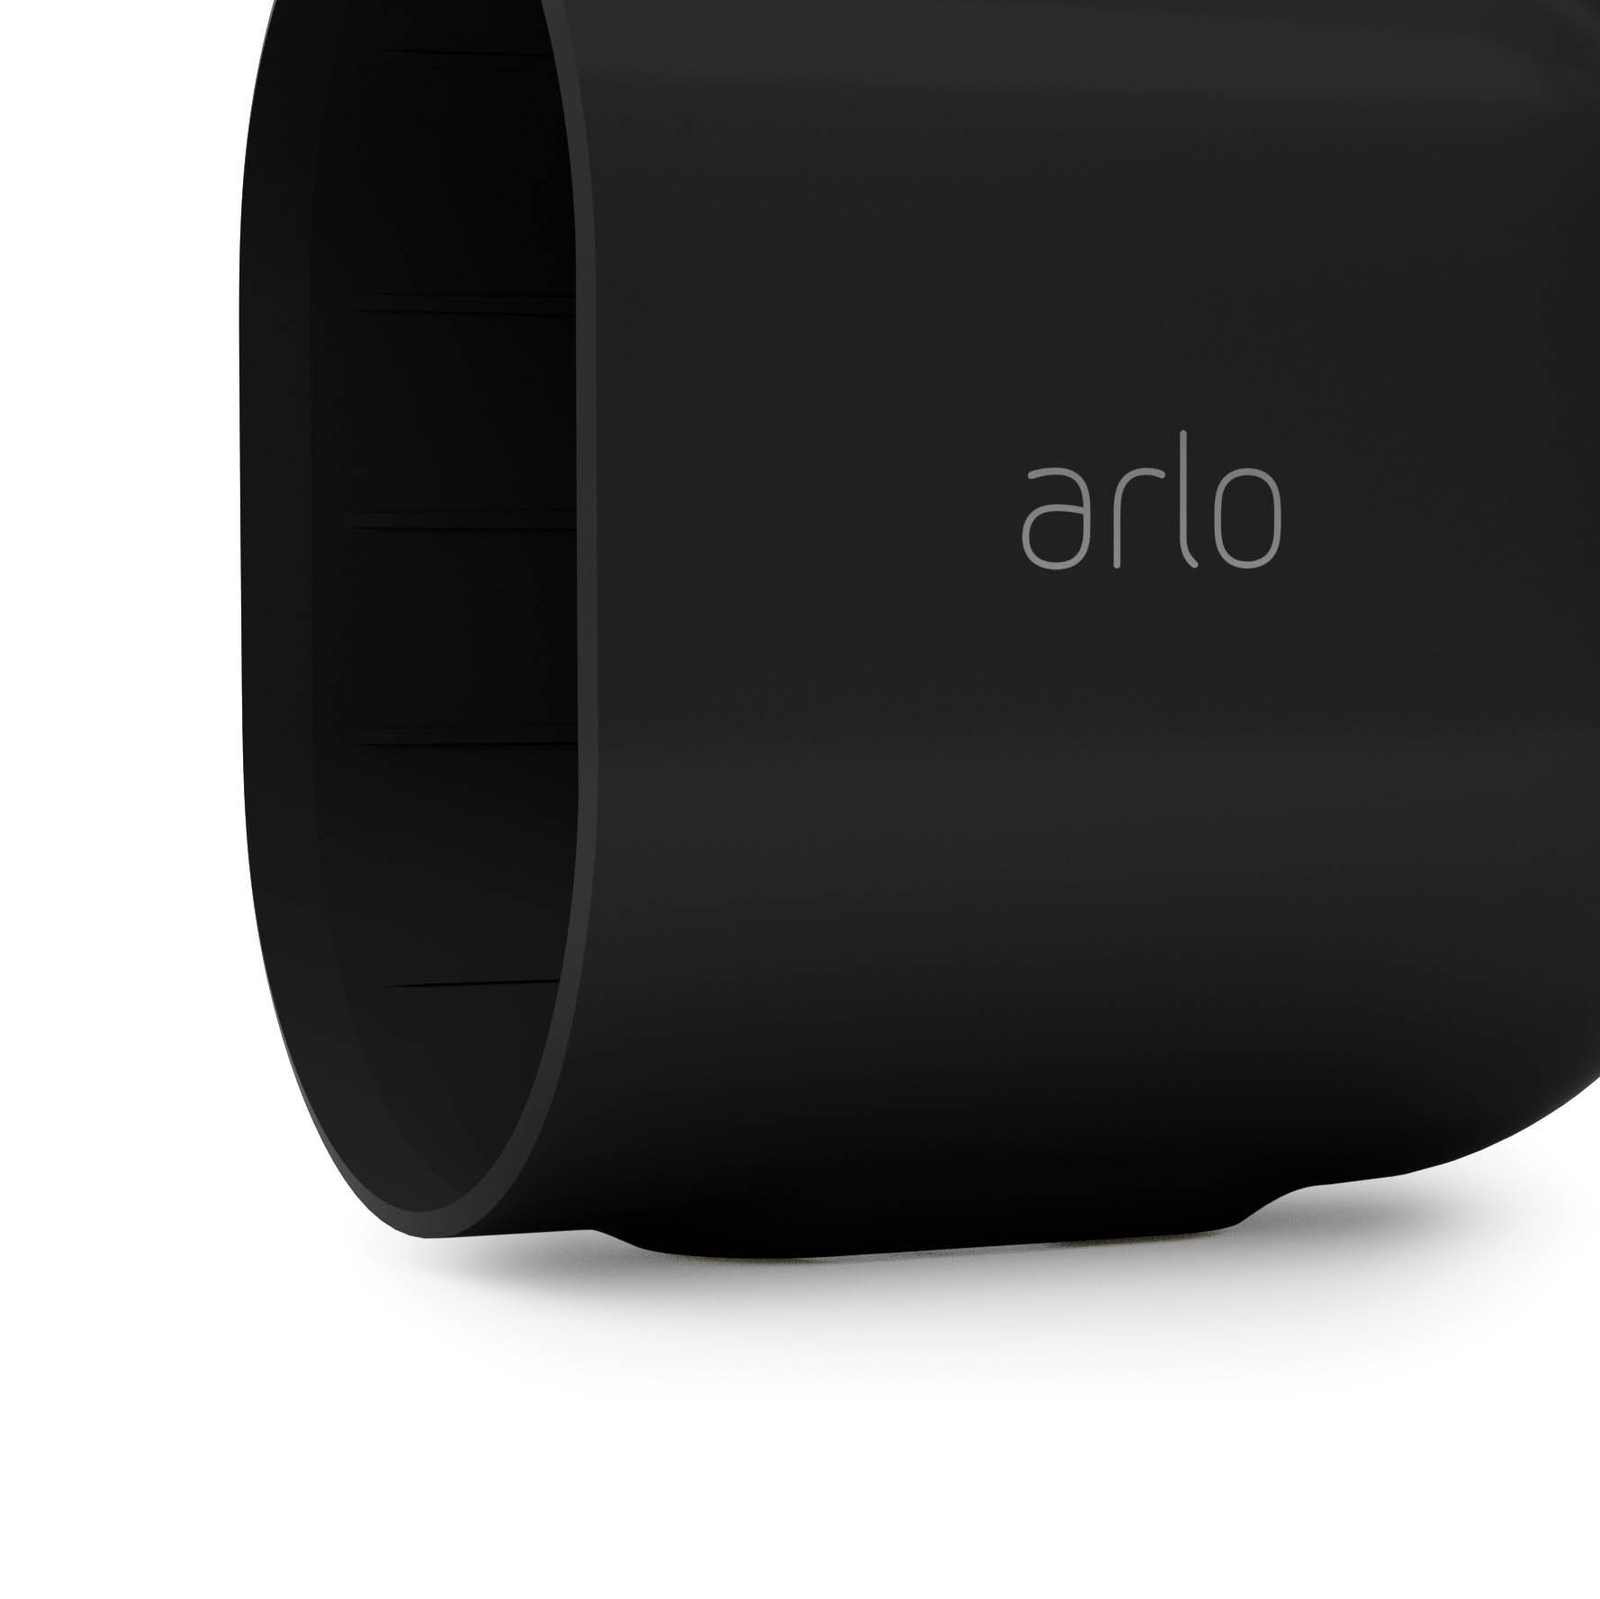 Carcasă Arlo pentru camerele Ultra & Pro, negru